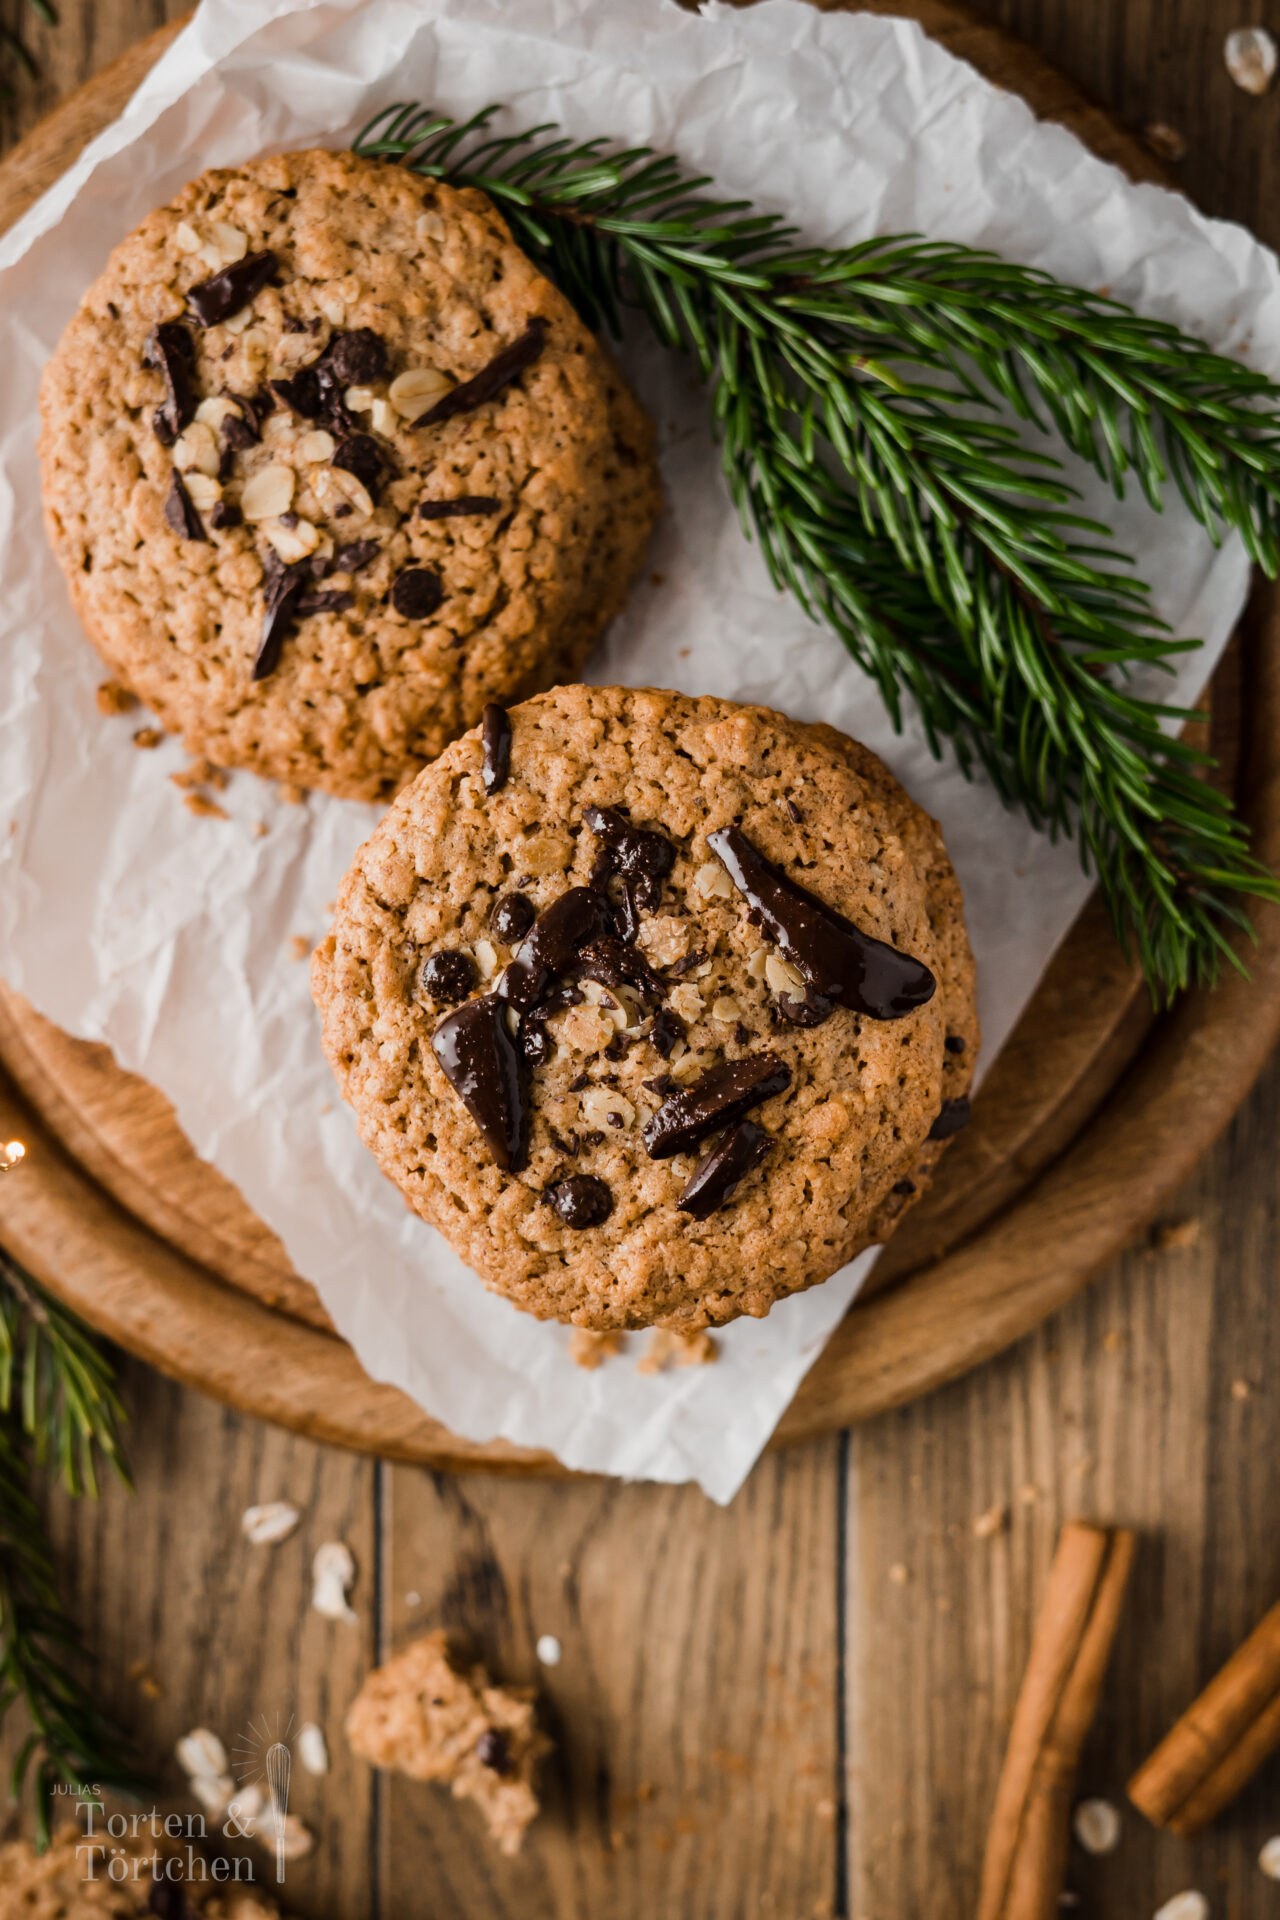 Schnelles und einfaches Rezept für wunderbare Haferplätzchen. Es ist eine Abwandlung von meinem Ursprünglichen Hafeplätzchenrezept mit Datteln, weil ich schon dieses so gerne mochte und da war ich nicht die Einzige! Aber ehrlich gesagt die Haferkekse mit Nougatfüllung haben es mir noch ein wenig mehr angetan! #hafeplätzchen #haferkekse #nougat #cookies #kekse #weihnachtsbäckerei #weihnachtsplätzchen #plätzchenrezept